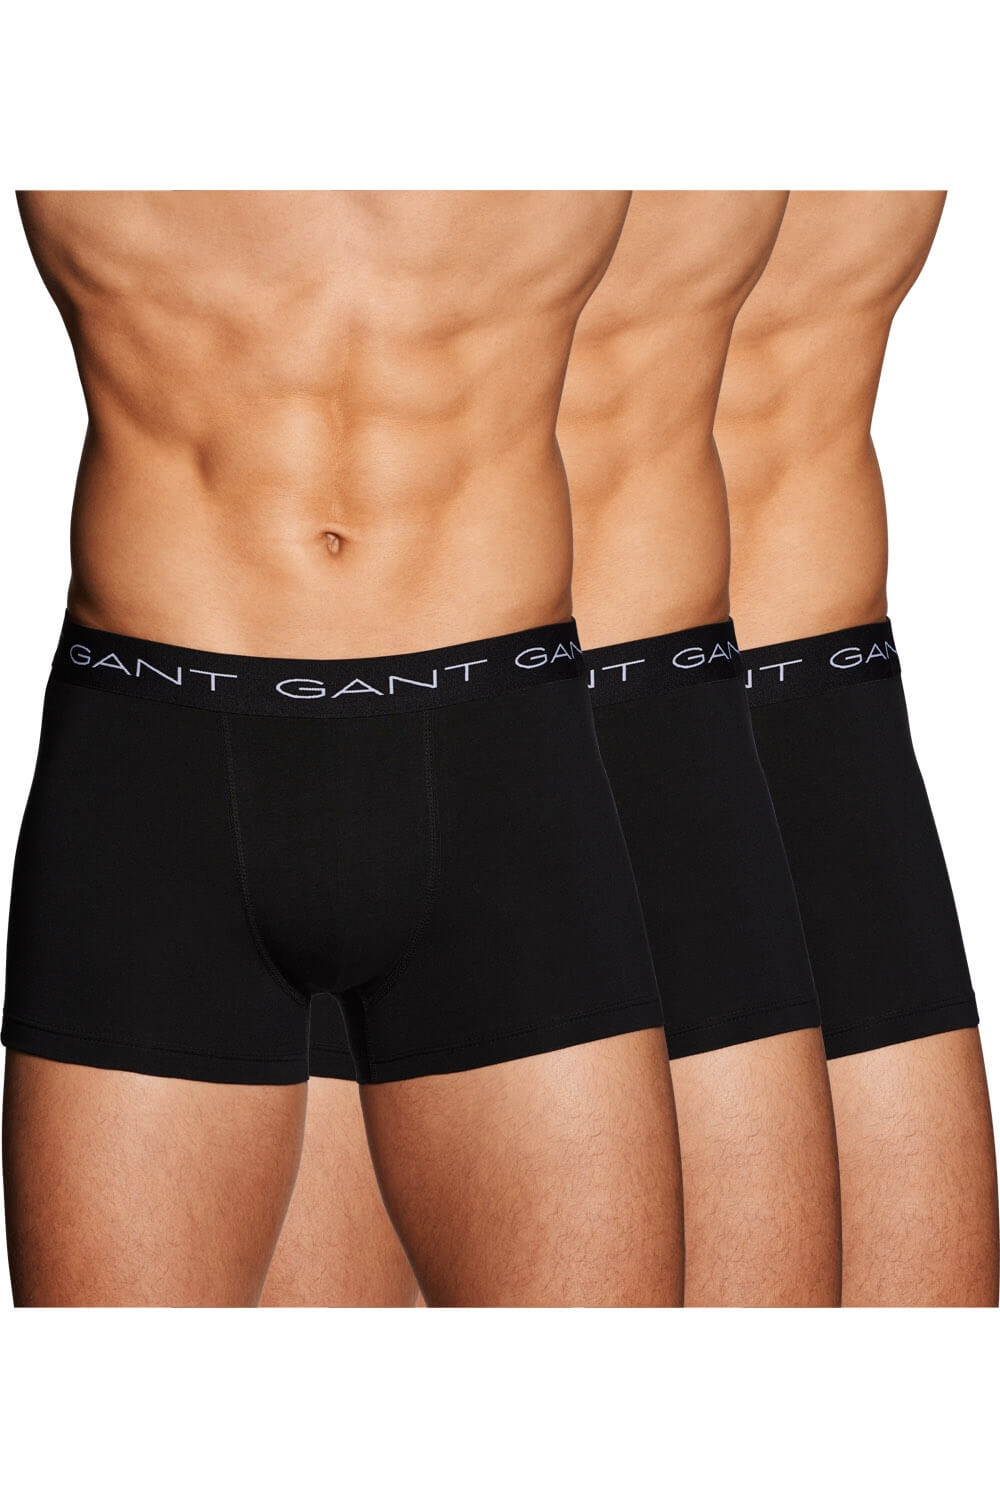 Gant Underwear in Black